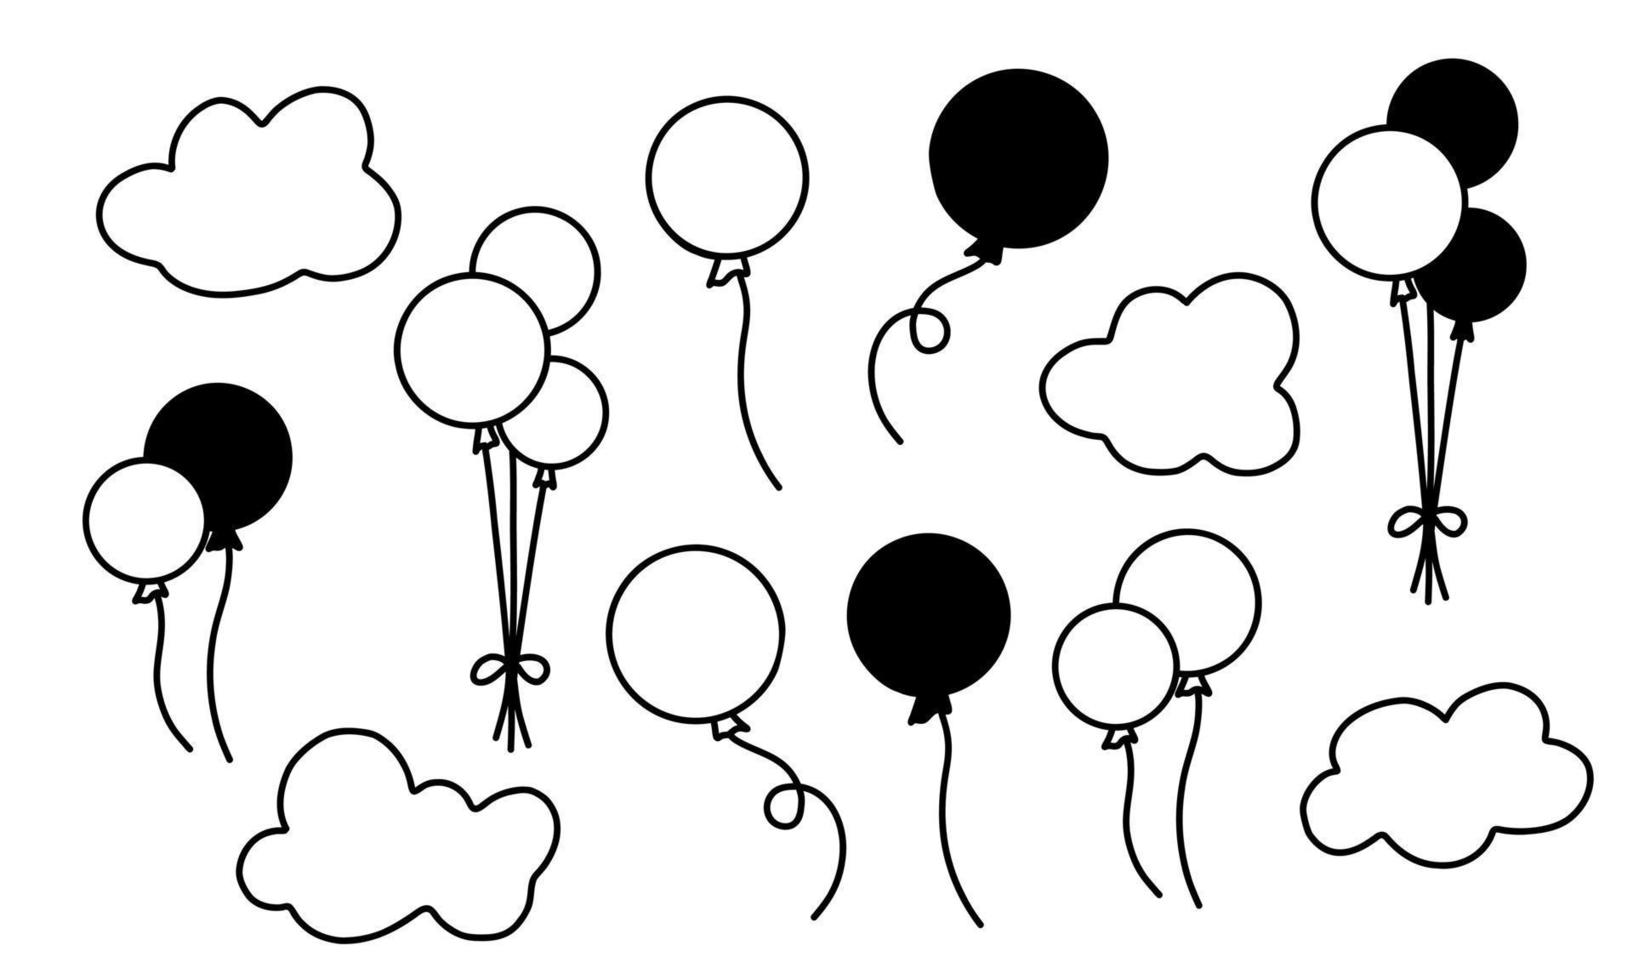 Vektorset mit Heißluftballons und Wolken. handgezeichnete illustration für geburtstags- oder grußkarten. Sammlung mit schwarzen Silhouetten auf weißem, isoliertem Hintergrund vektor